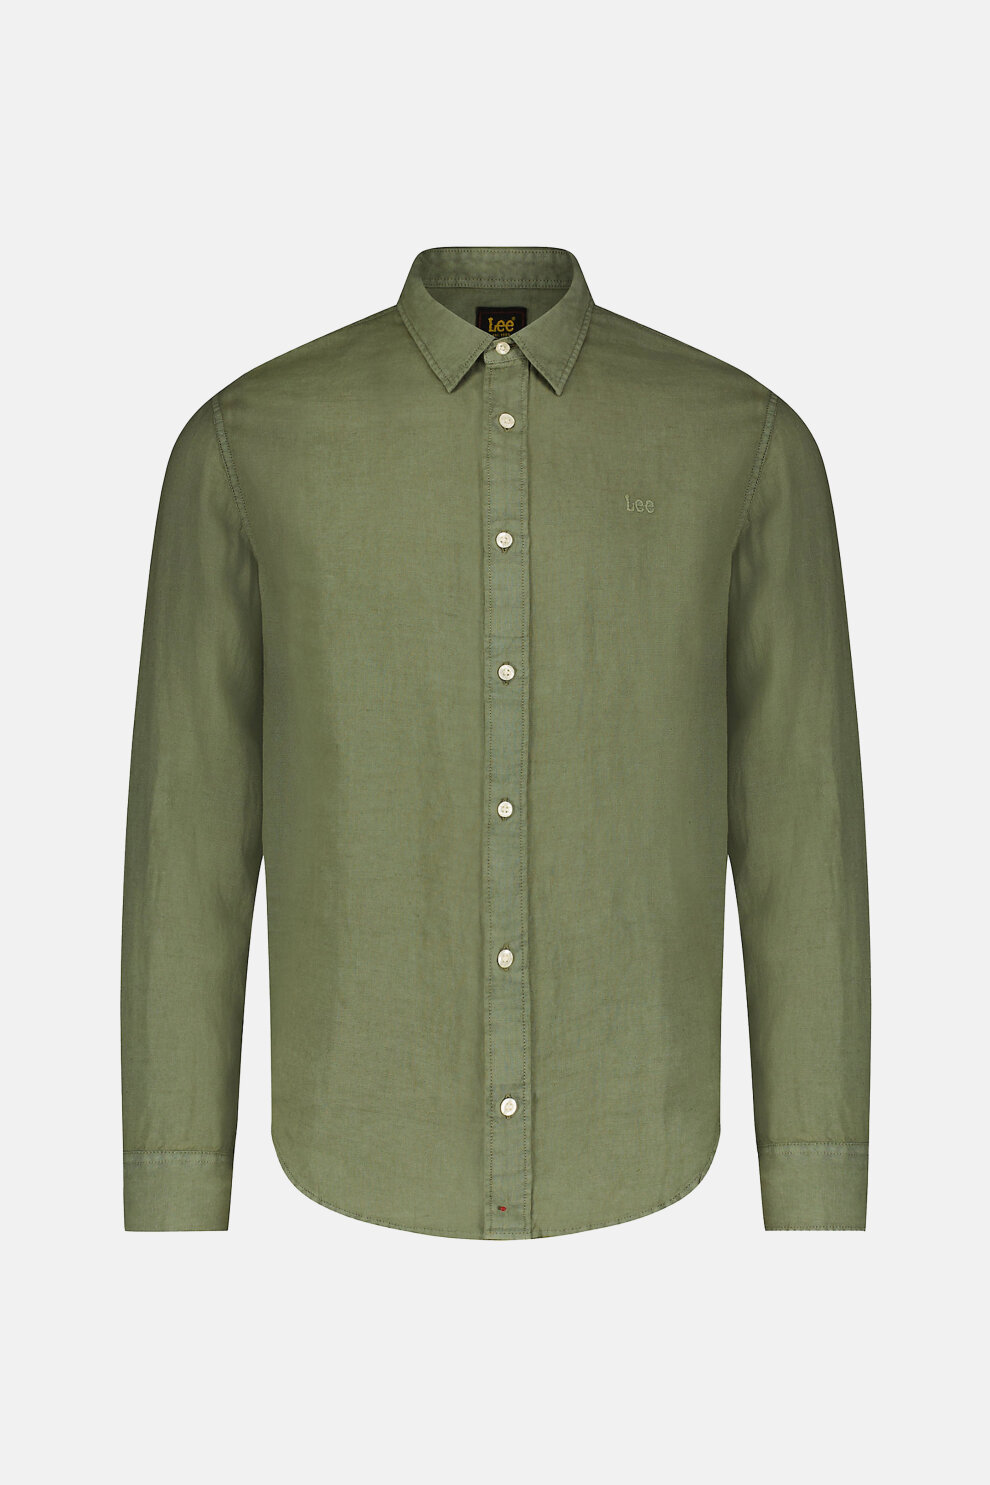 MUŠKARCI - Košulje - Lee košulja - Dugi rukavi - Zelena